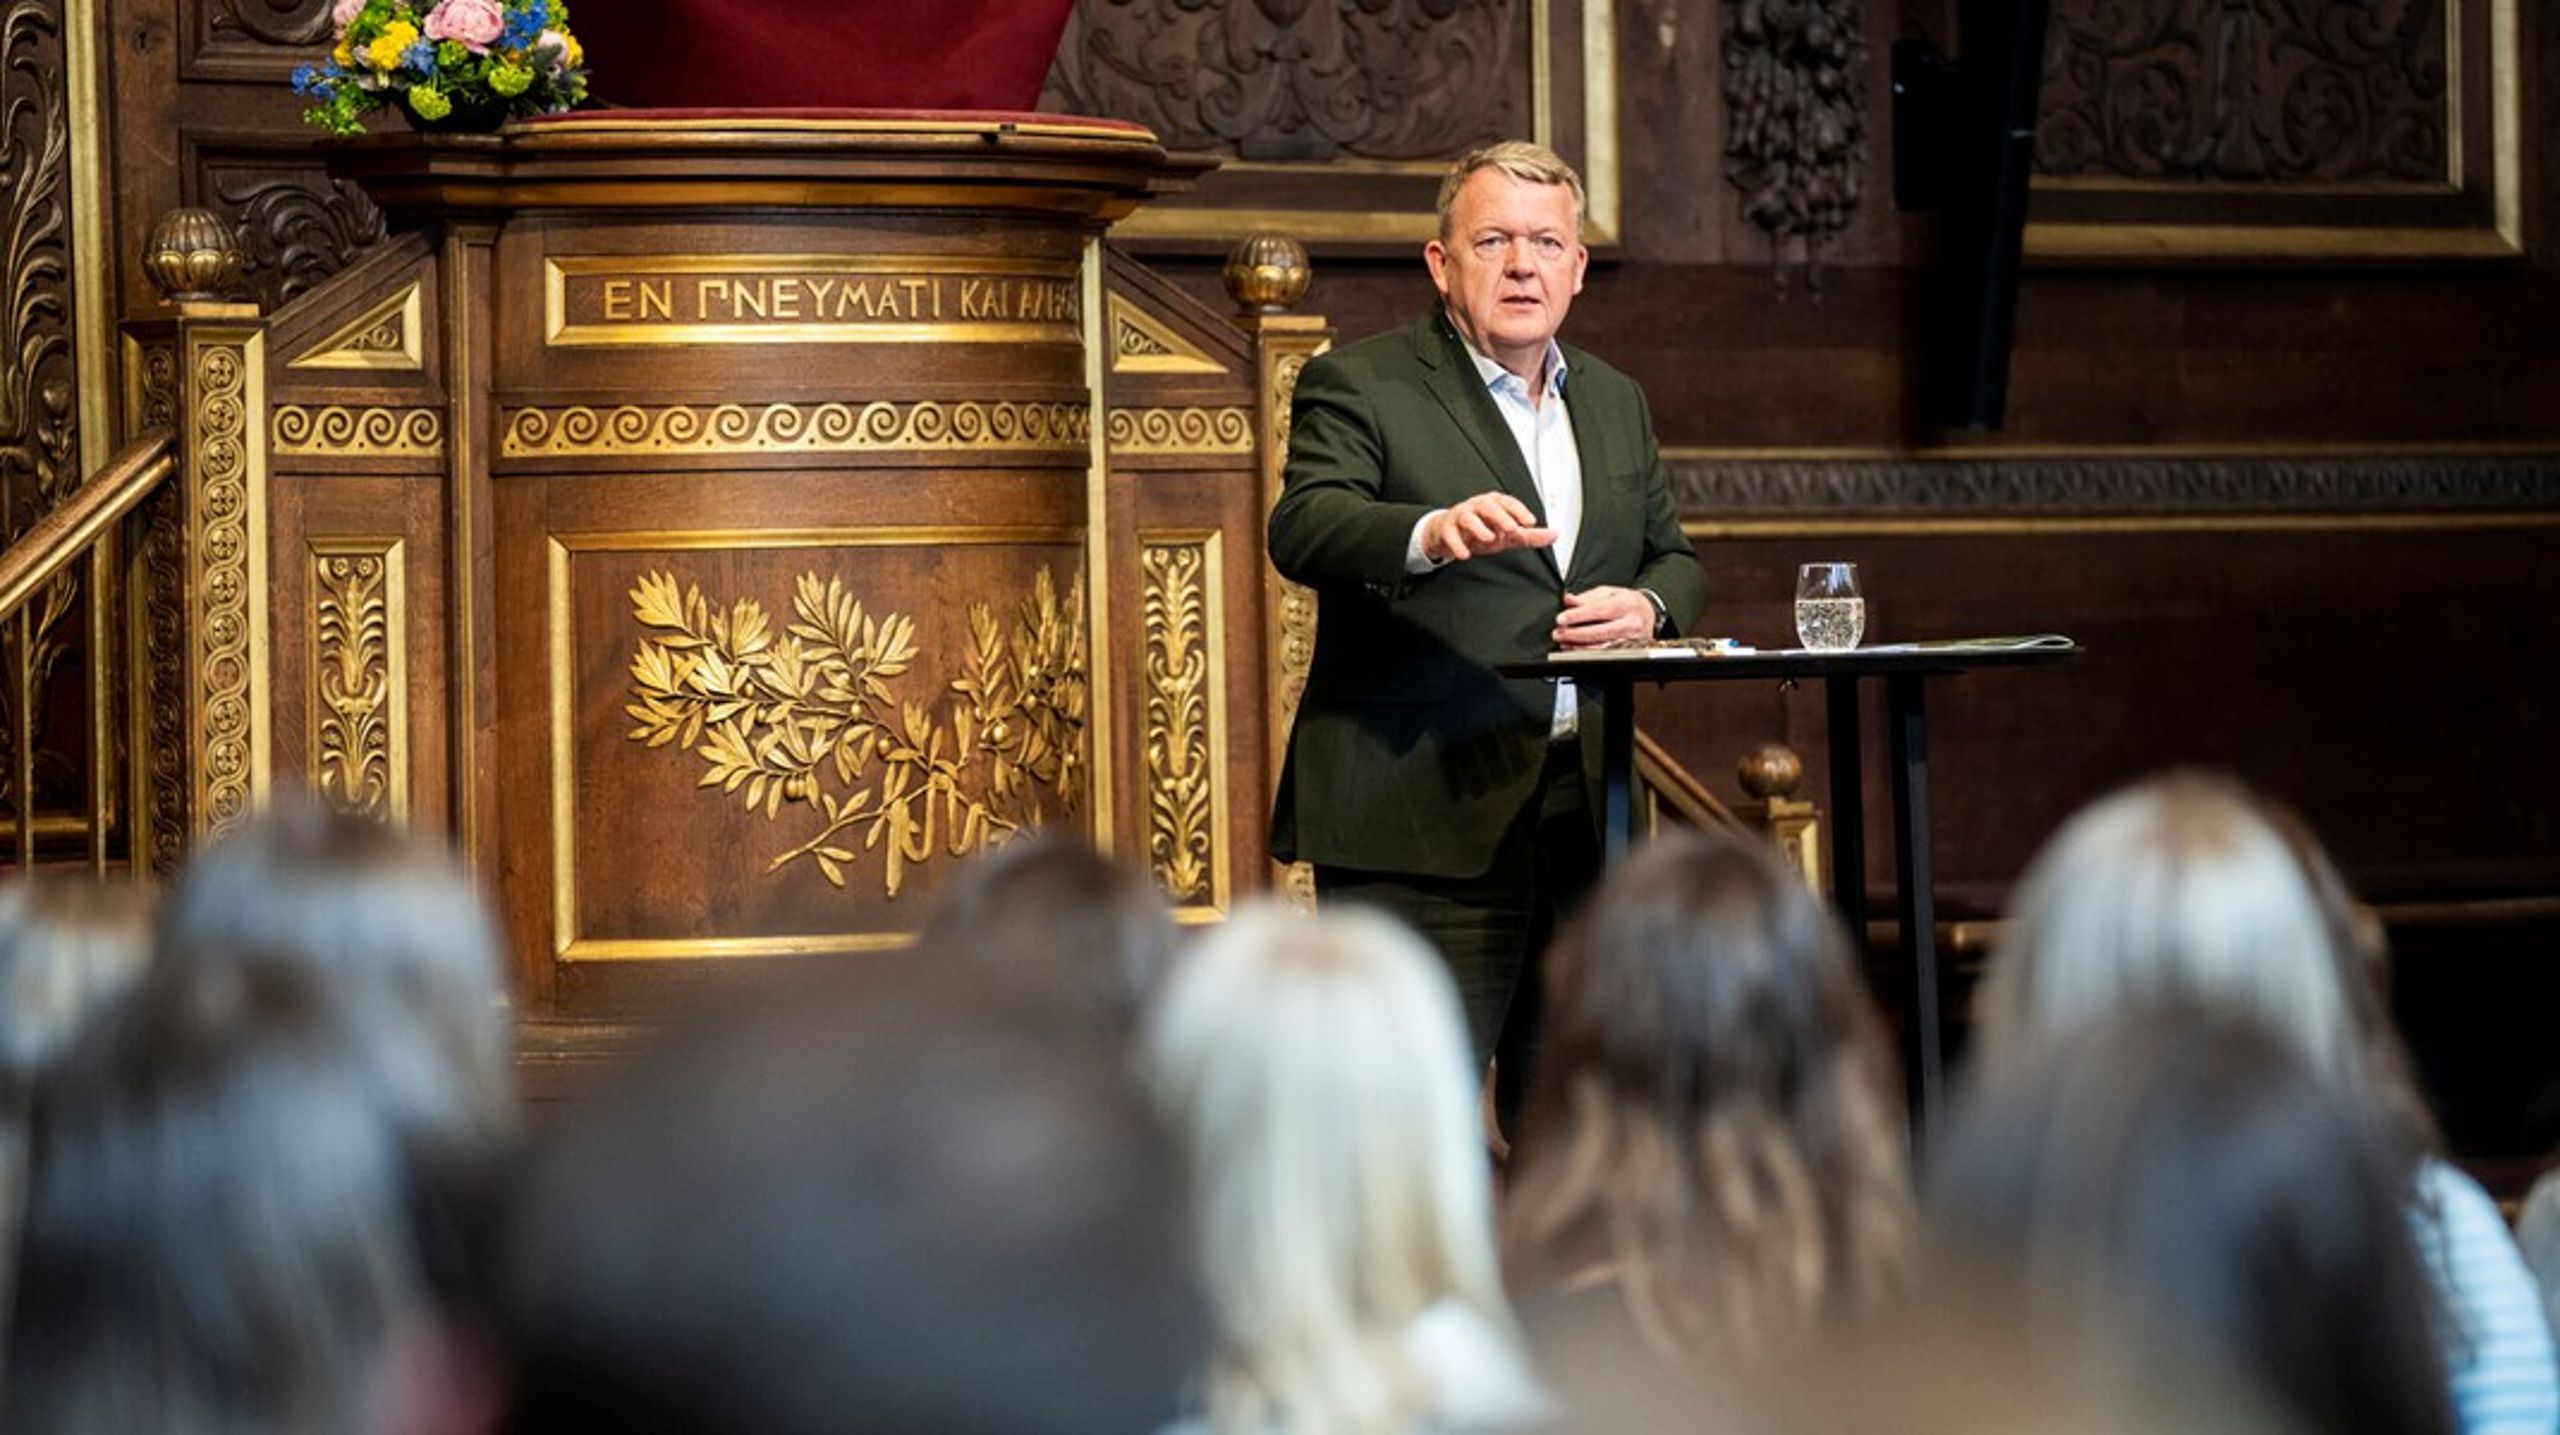 Vi skal være både pragmatiske og idealistiske, sagde udenrigsminister Lars Løkke Rasmussen (M), da han tirsdag præsenterede regeringens nye udenrigs- og sikkerhedspolitiske strategi foran studerende på Københavns Universitet.